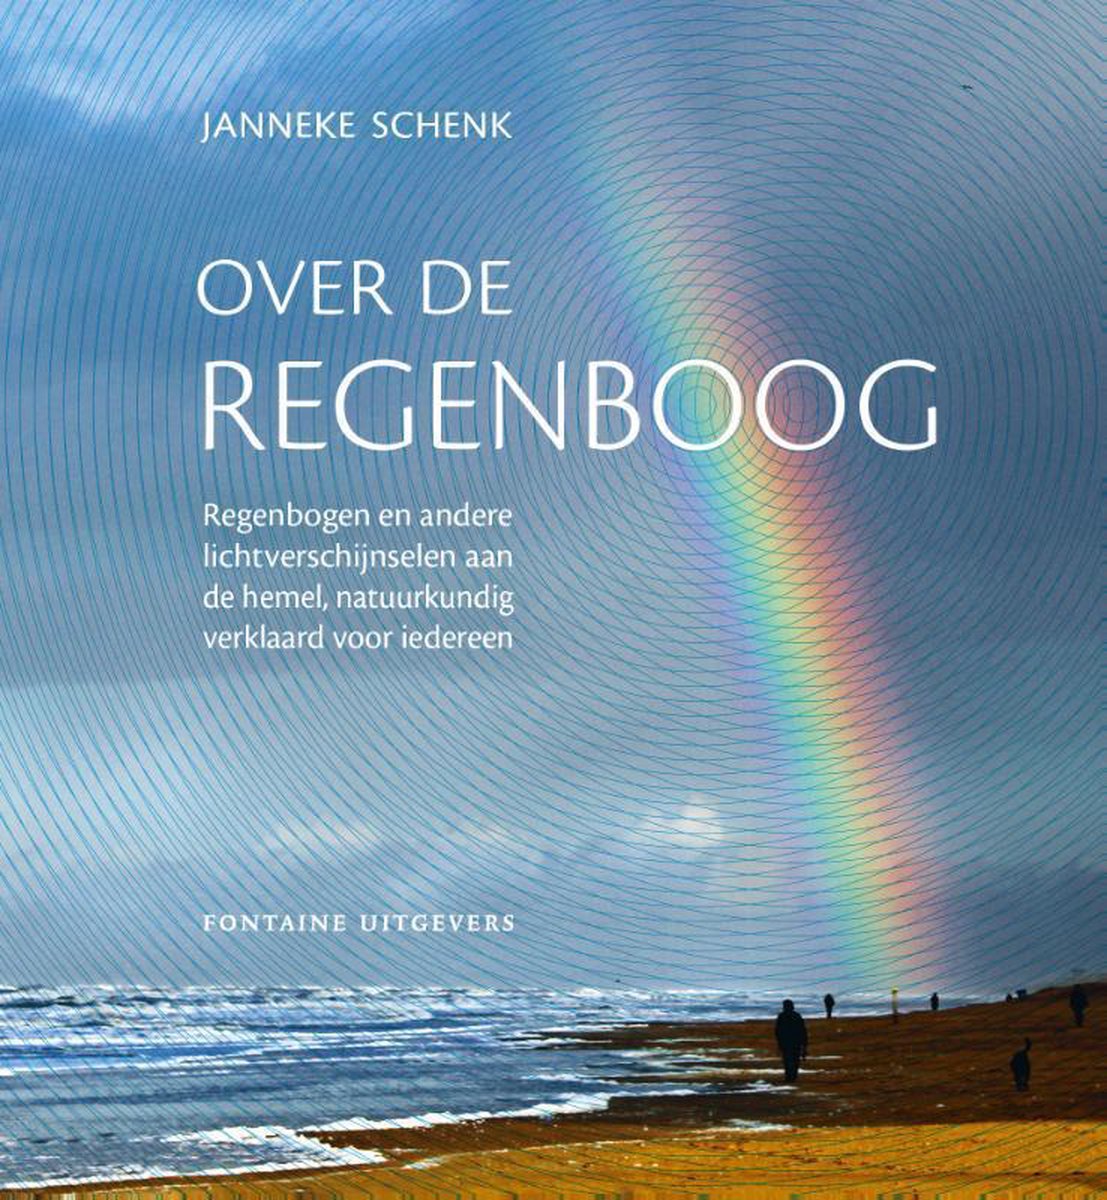 Over de regenboog, Janneke Schenk | 9789059568006 | Boeken | bol.com